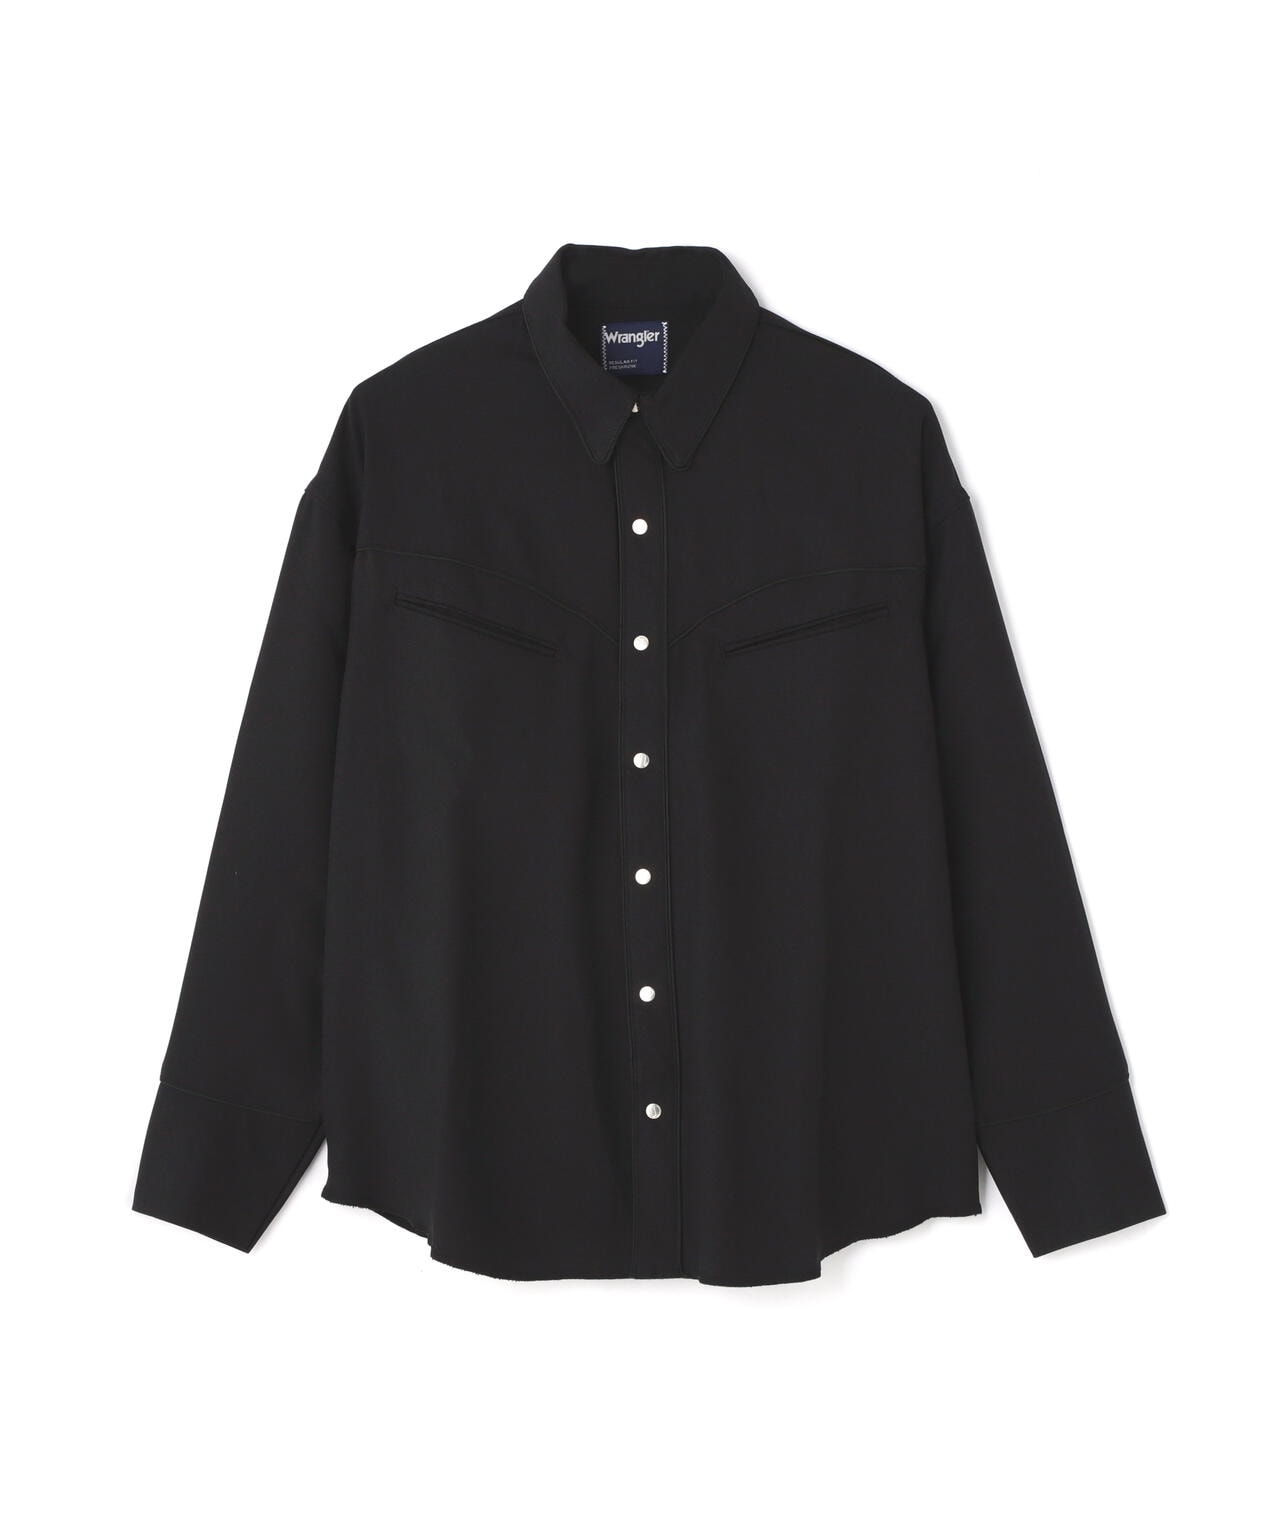 ショット ウエスタン シャツ USA 90s カラーシャツ ブラック 長袖